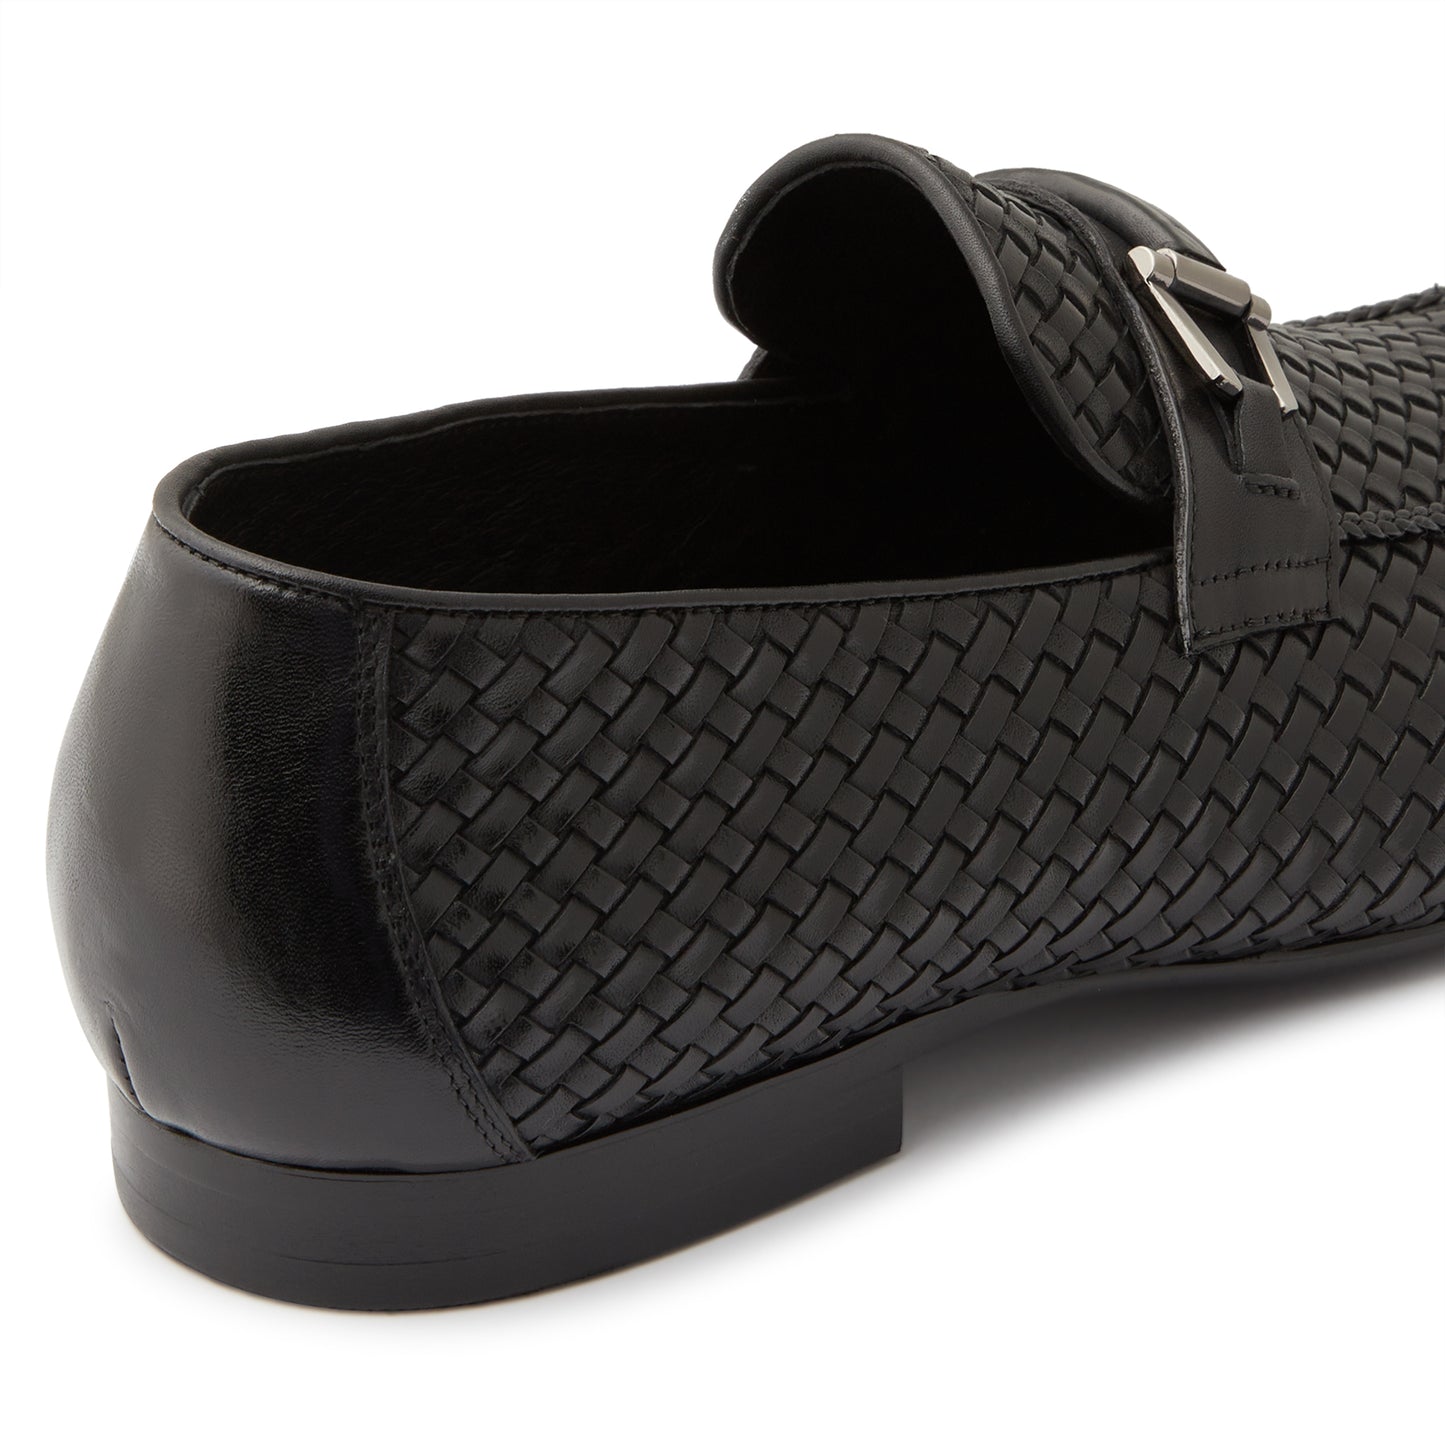 Miami Black Loafers